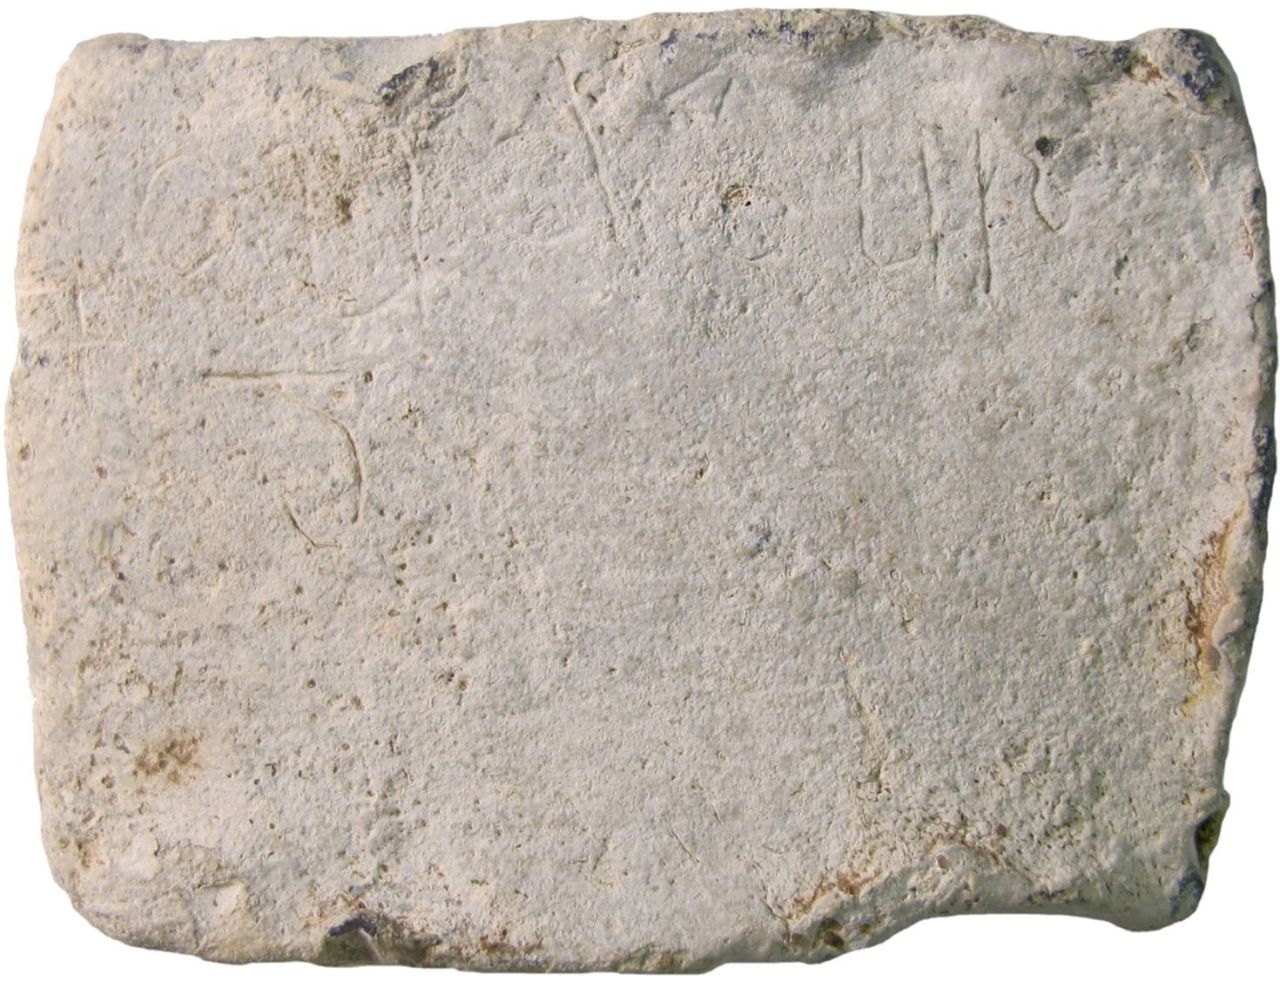 Cudberg-inscription-1-1280x981.jpg